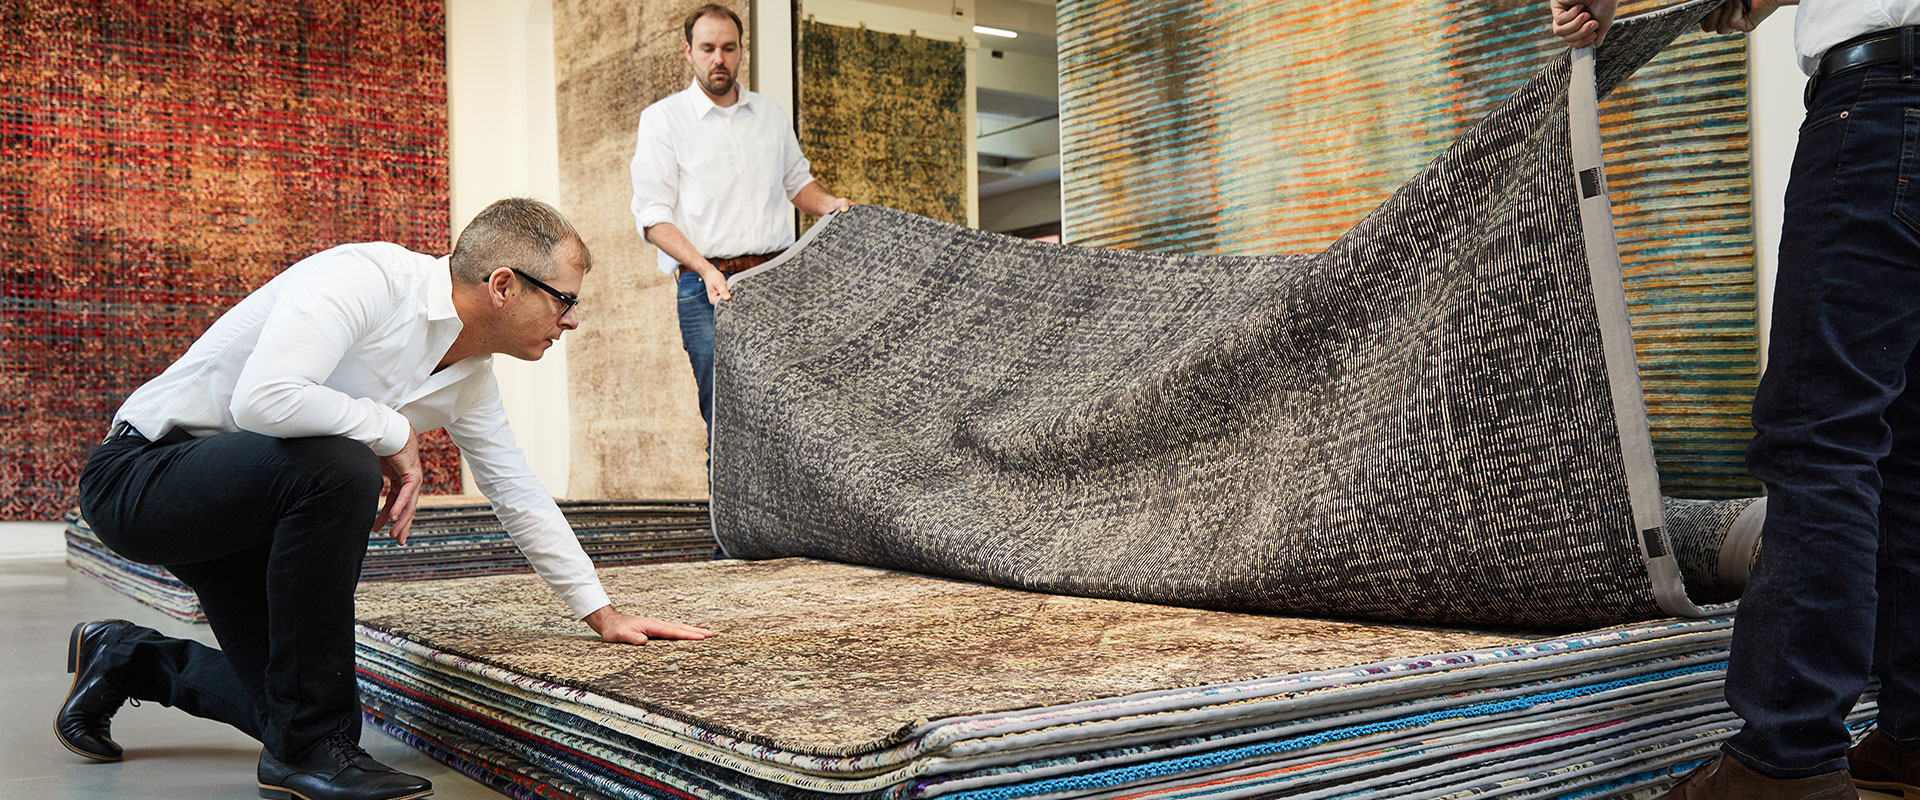 Zwei Männer in einem Teppichgeschäft beim Umschichten von Teppichen auf einem großen Stapel, mit verschiedenen Teppichdesigns im Hintergrund sichtbar.